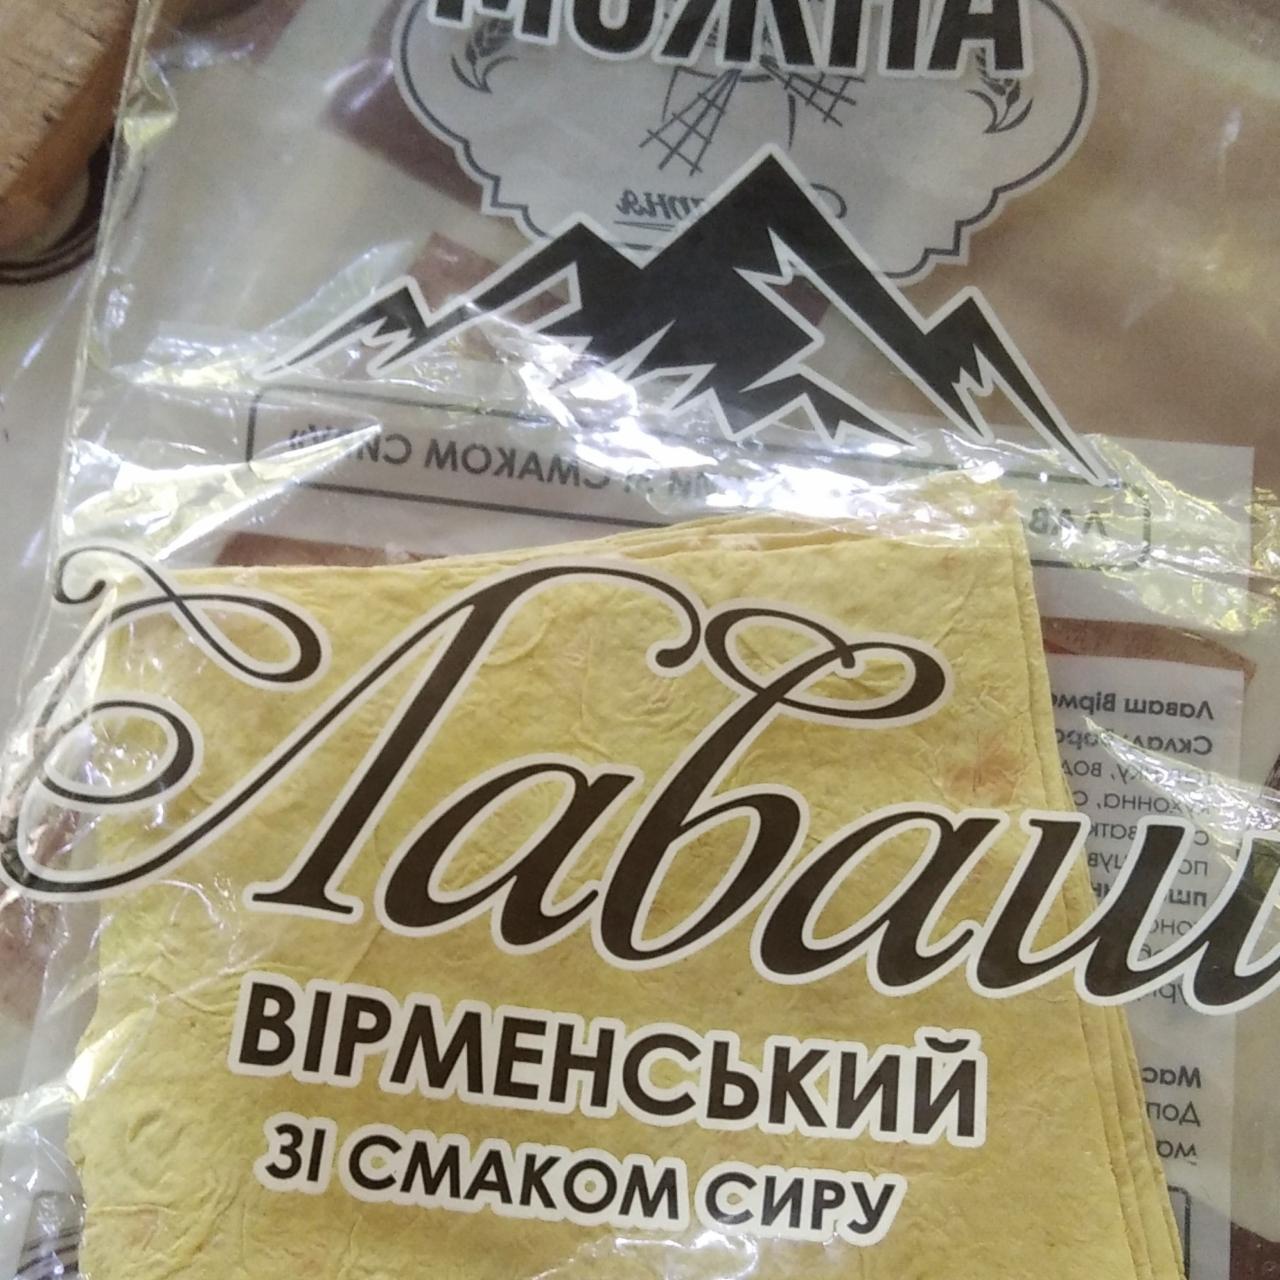 Фото - Лаваш вірменський зі смаком сиру Можна